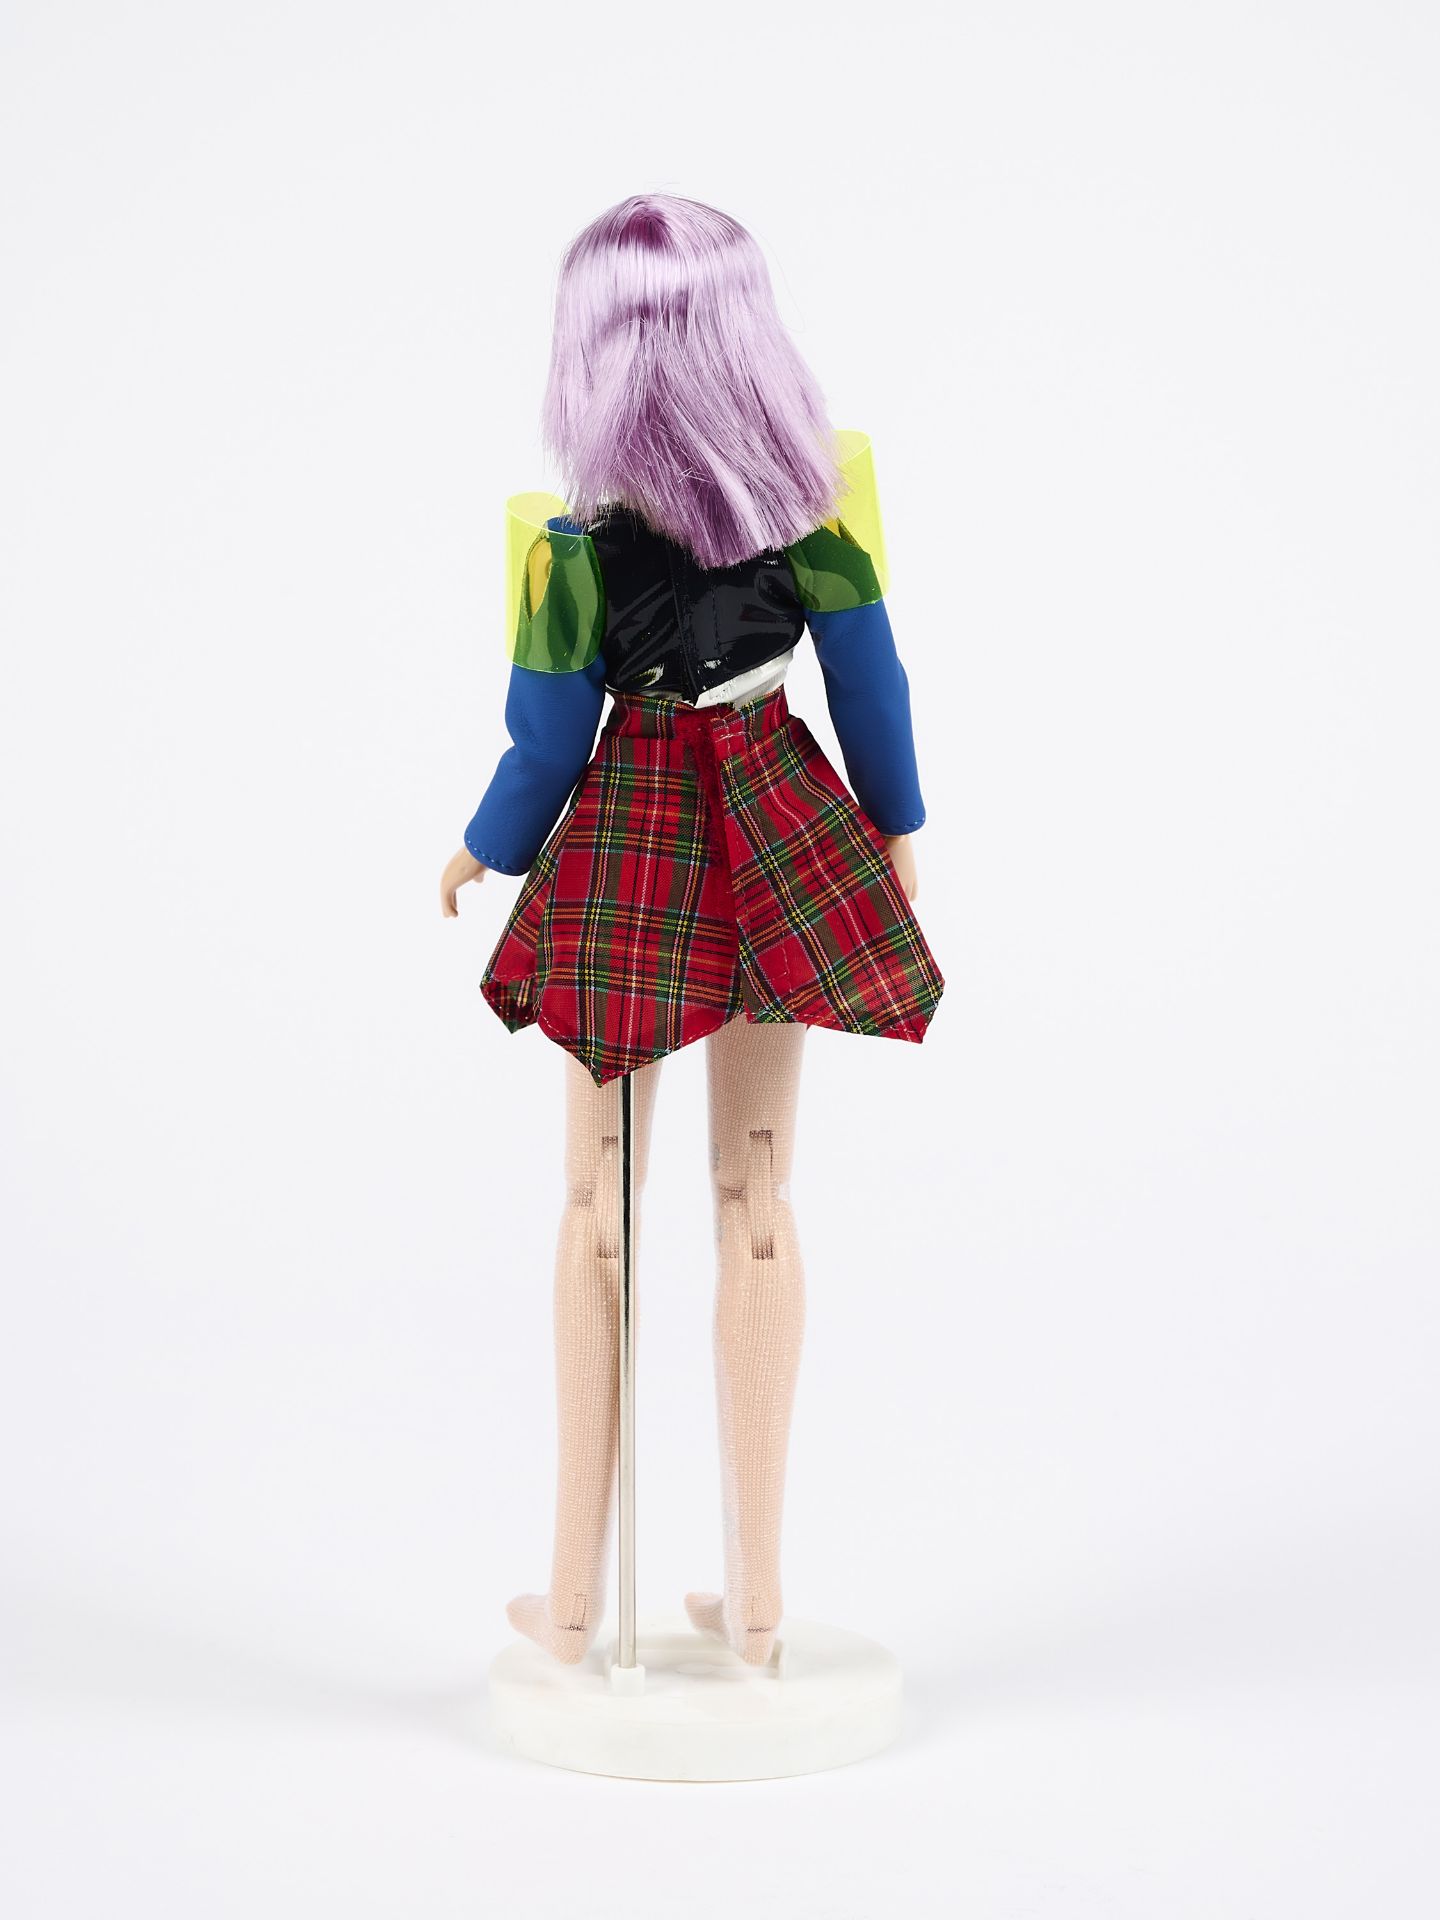 Mariko Mori: Star Doll (für Parkett 54) - Image 3 of 5